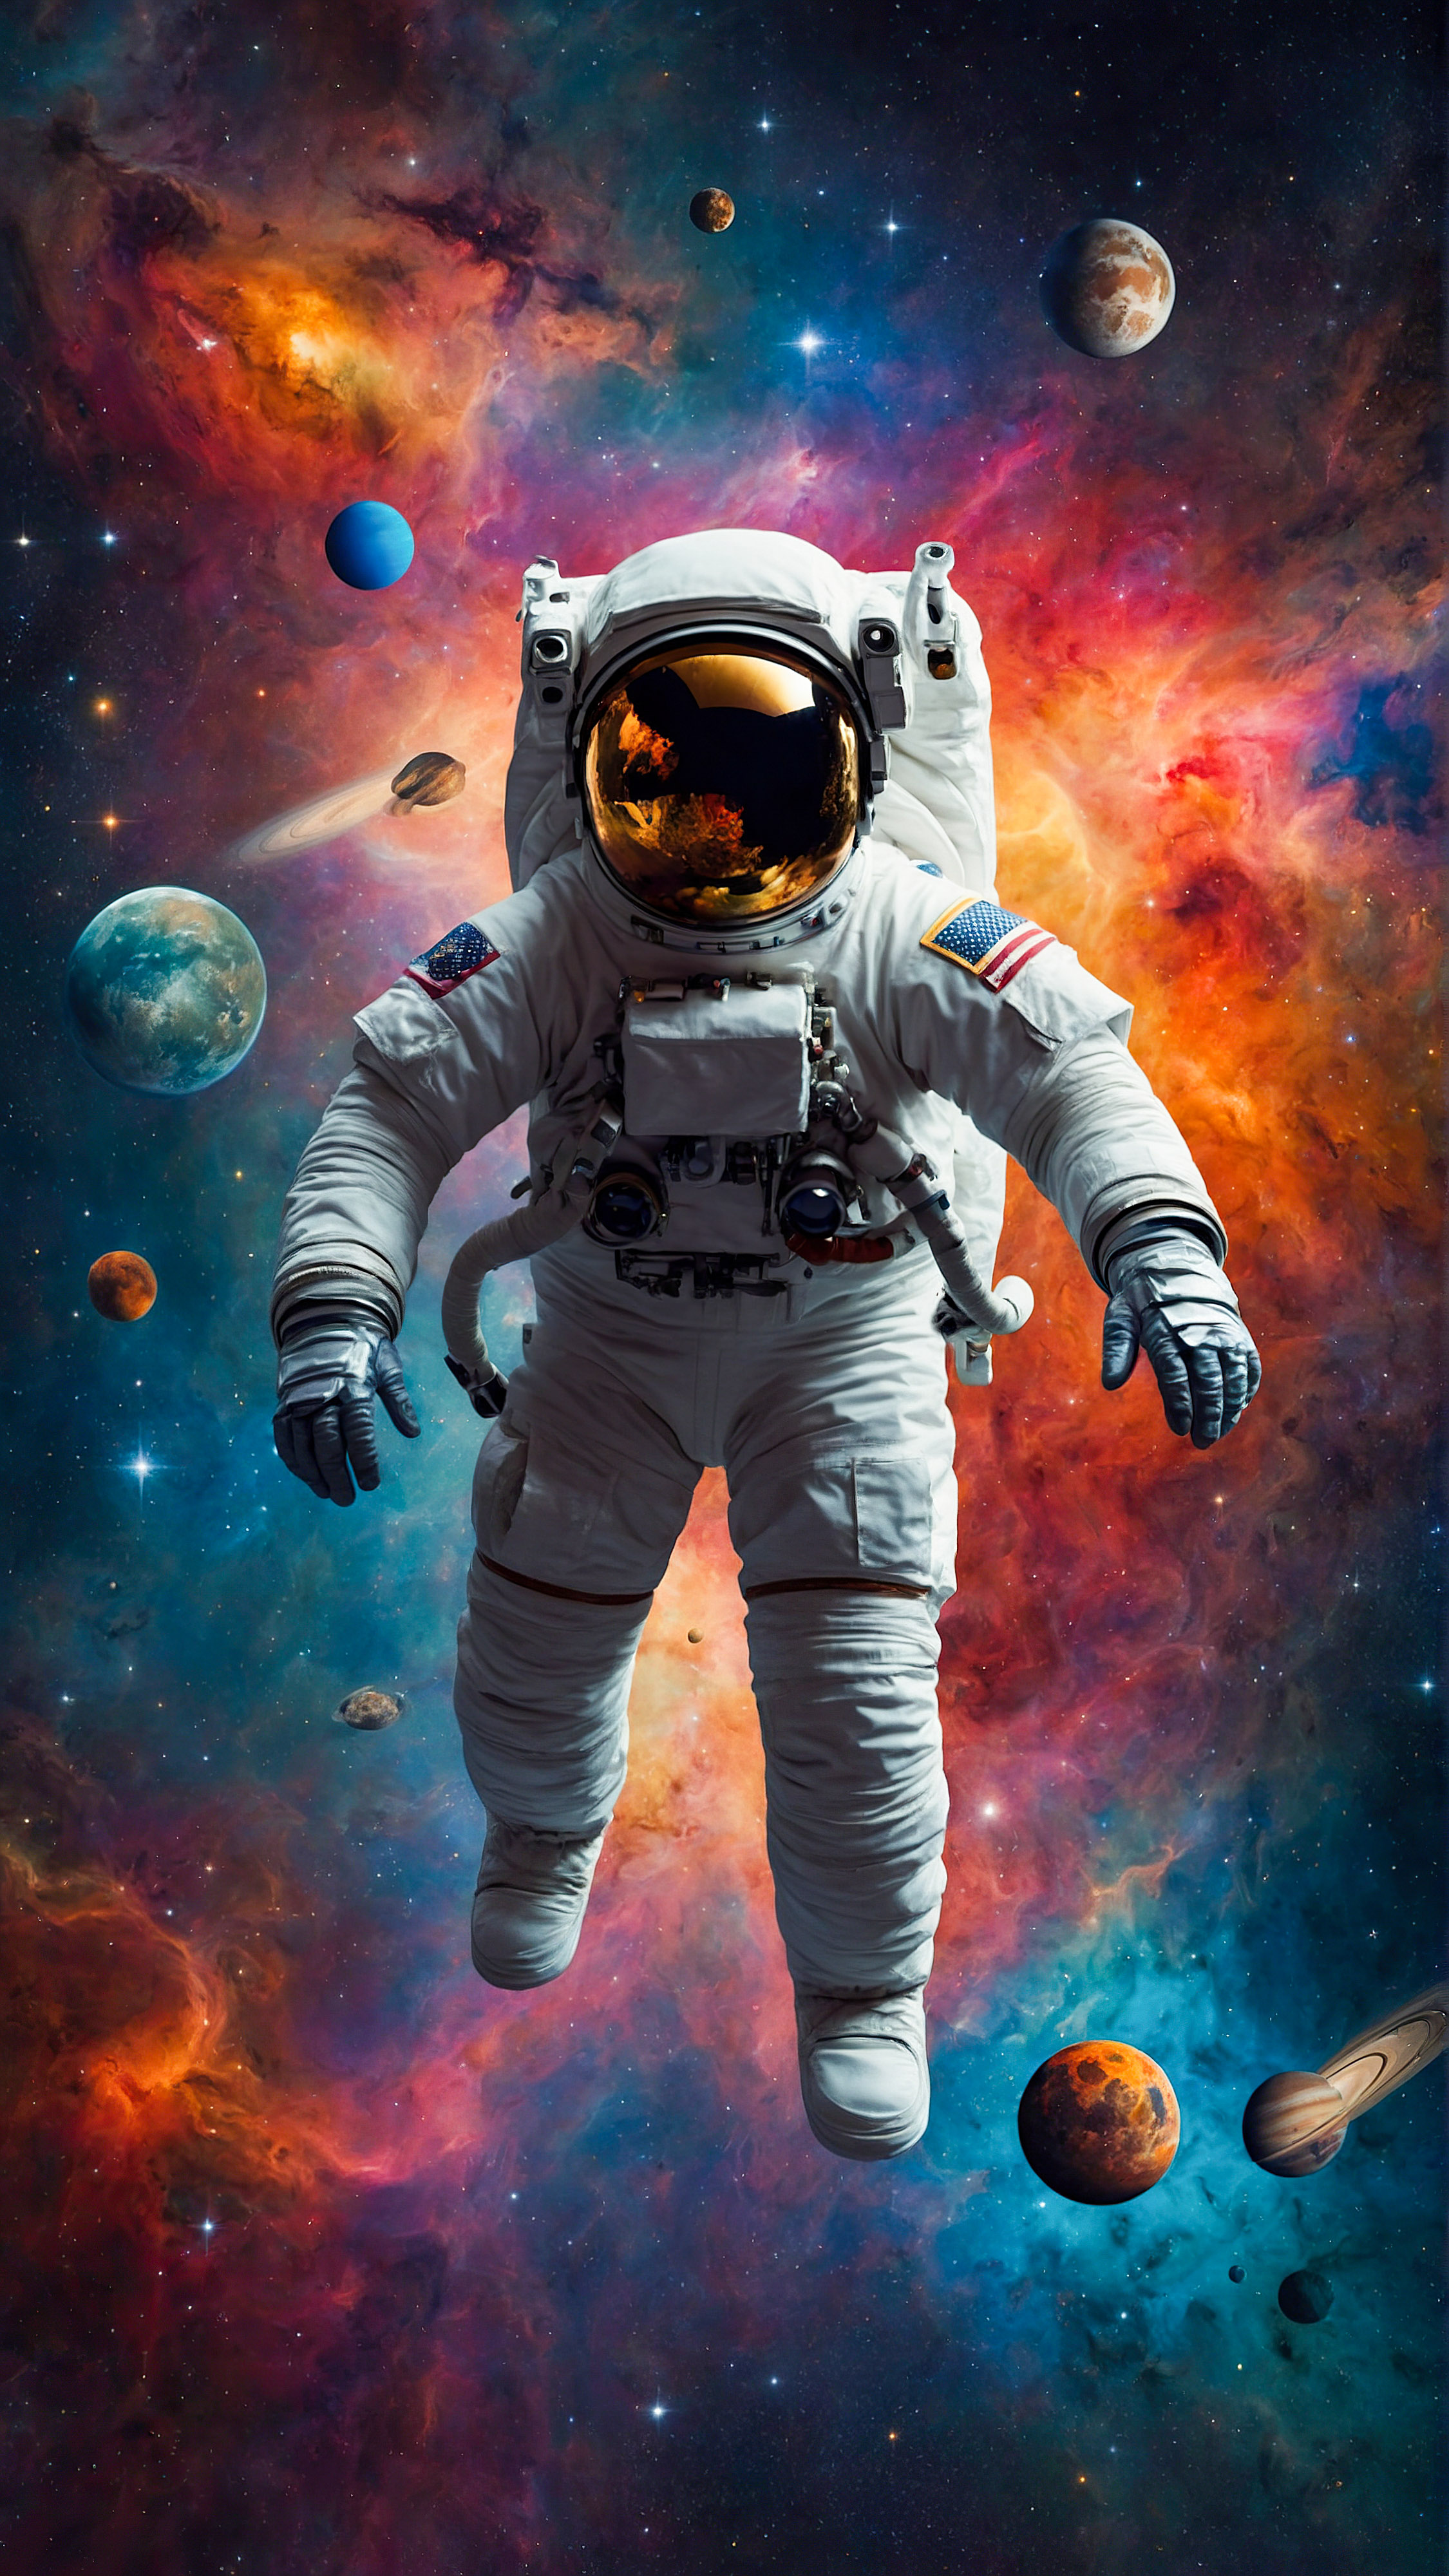 Transformez l'apparence de votre appareil avec notre fond d'écran OLED pour iPhone, une œuvre d'art de style collage d'un astronaute entouré de divers corps célestes et formes colorées contre un fond spatial étoilé.